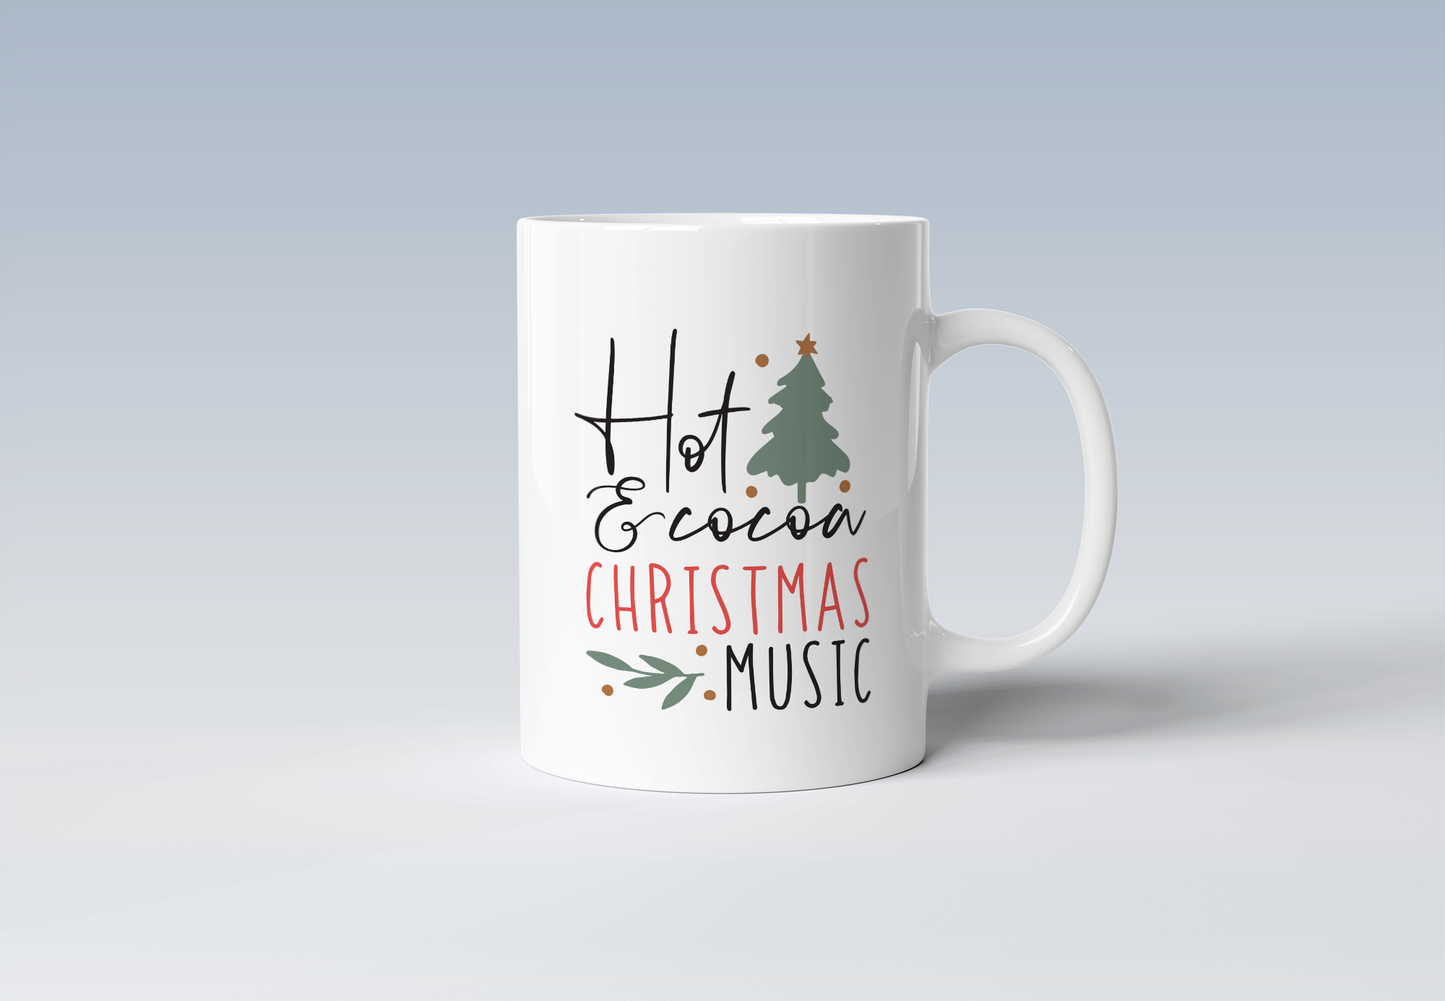 Hot Cocoa & Christmas Music Holiday Coffee Mug